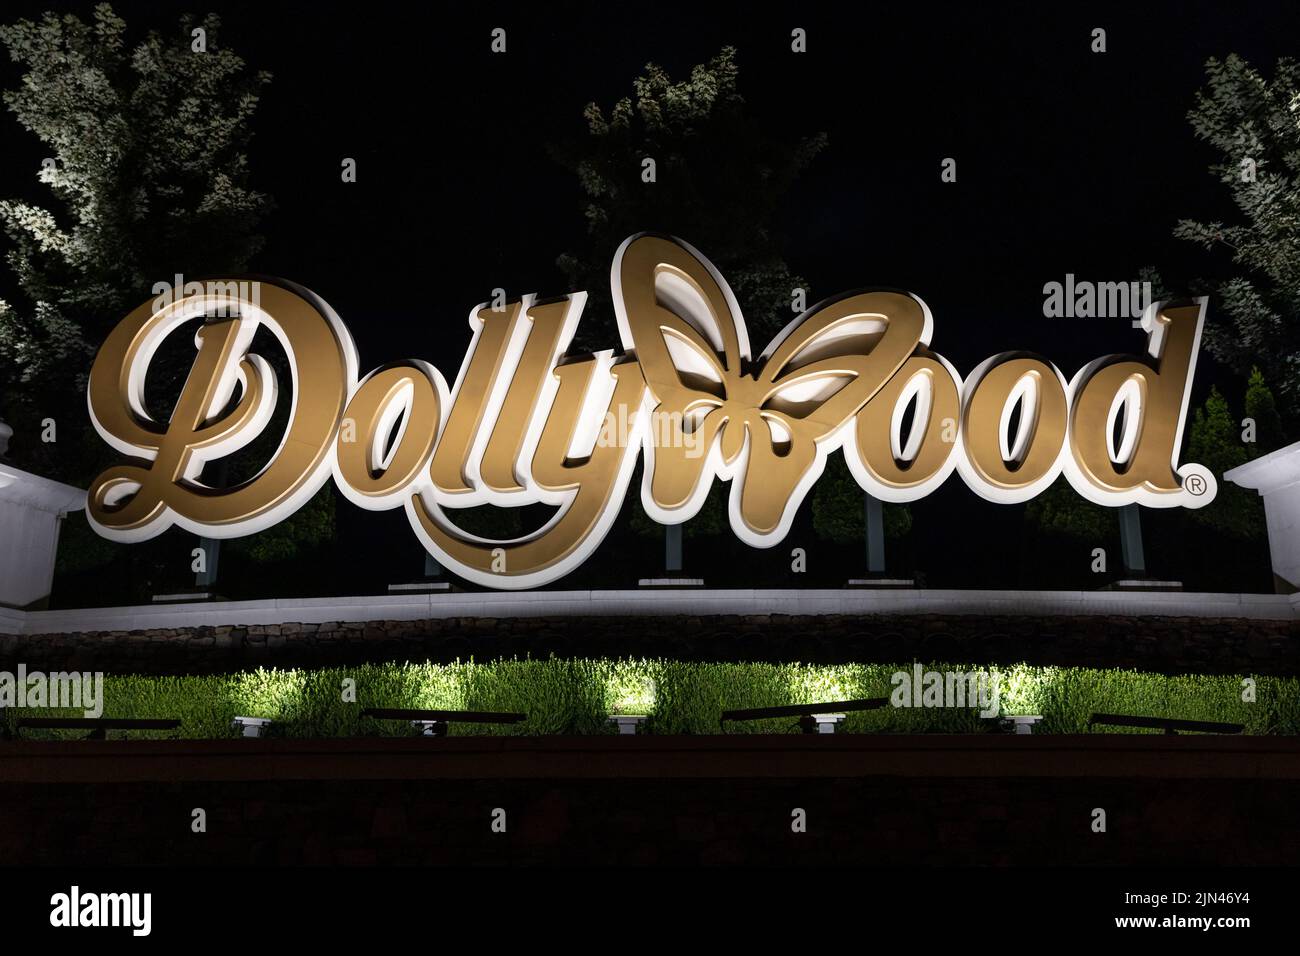 Der Eingang zu Dollywood mit dem Vergnügungspark-Logo. Dollywood ist Dolly Partons berühmter Vergnügungspark in den Smoky Mountains. Stockfoto